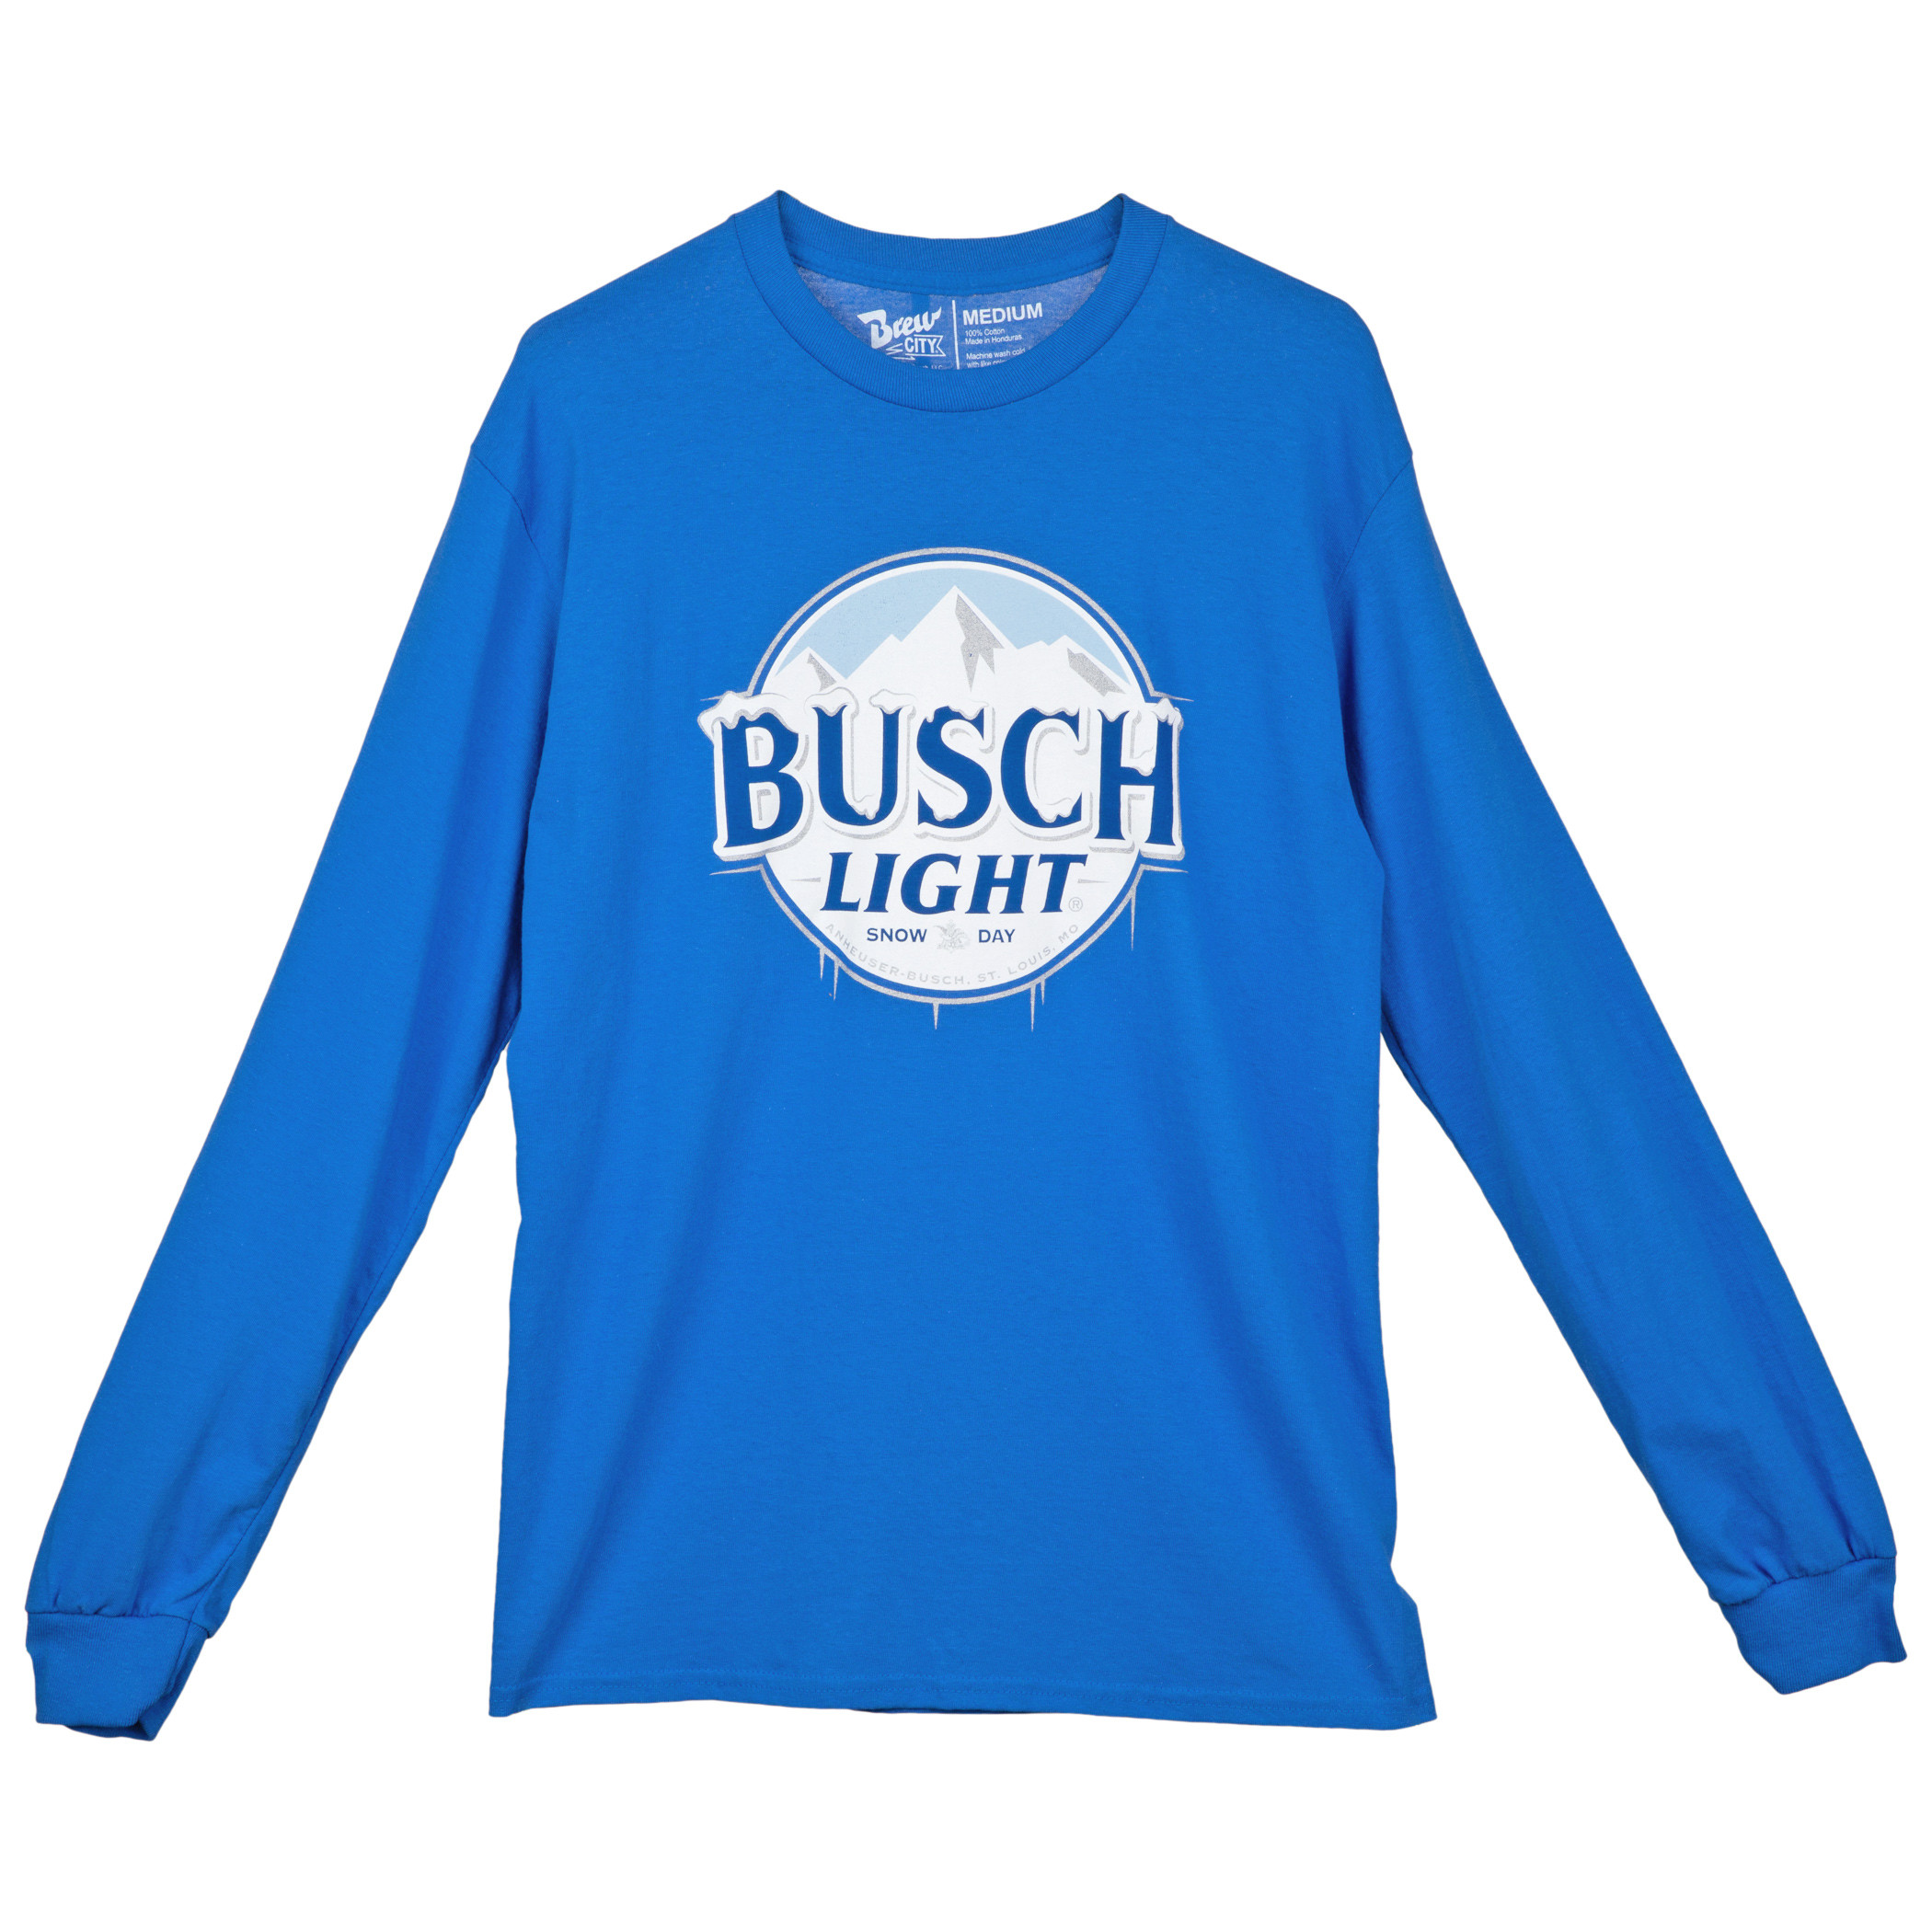 Busch Light Snow Day Logo Long Sleeved Shirt